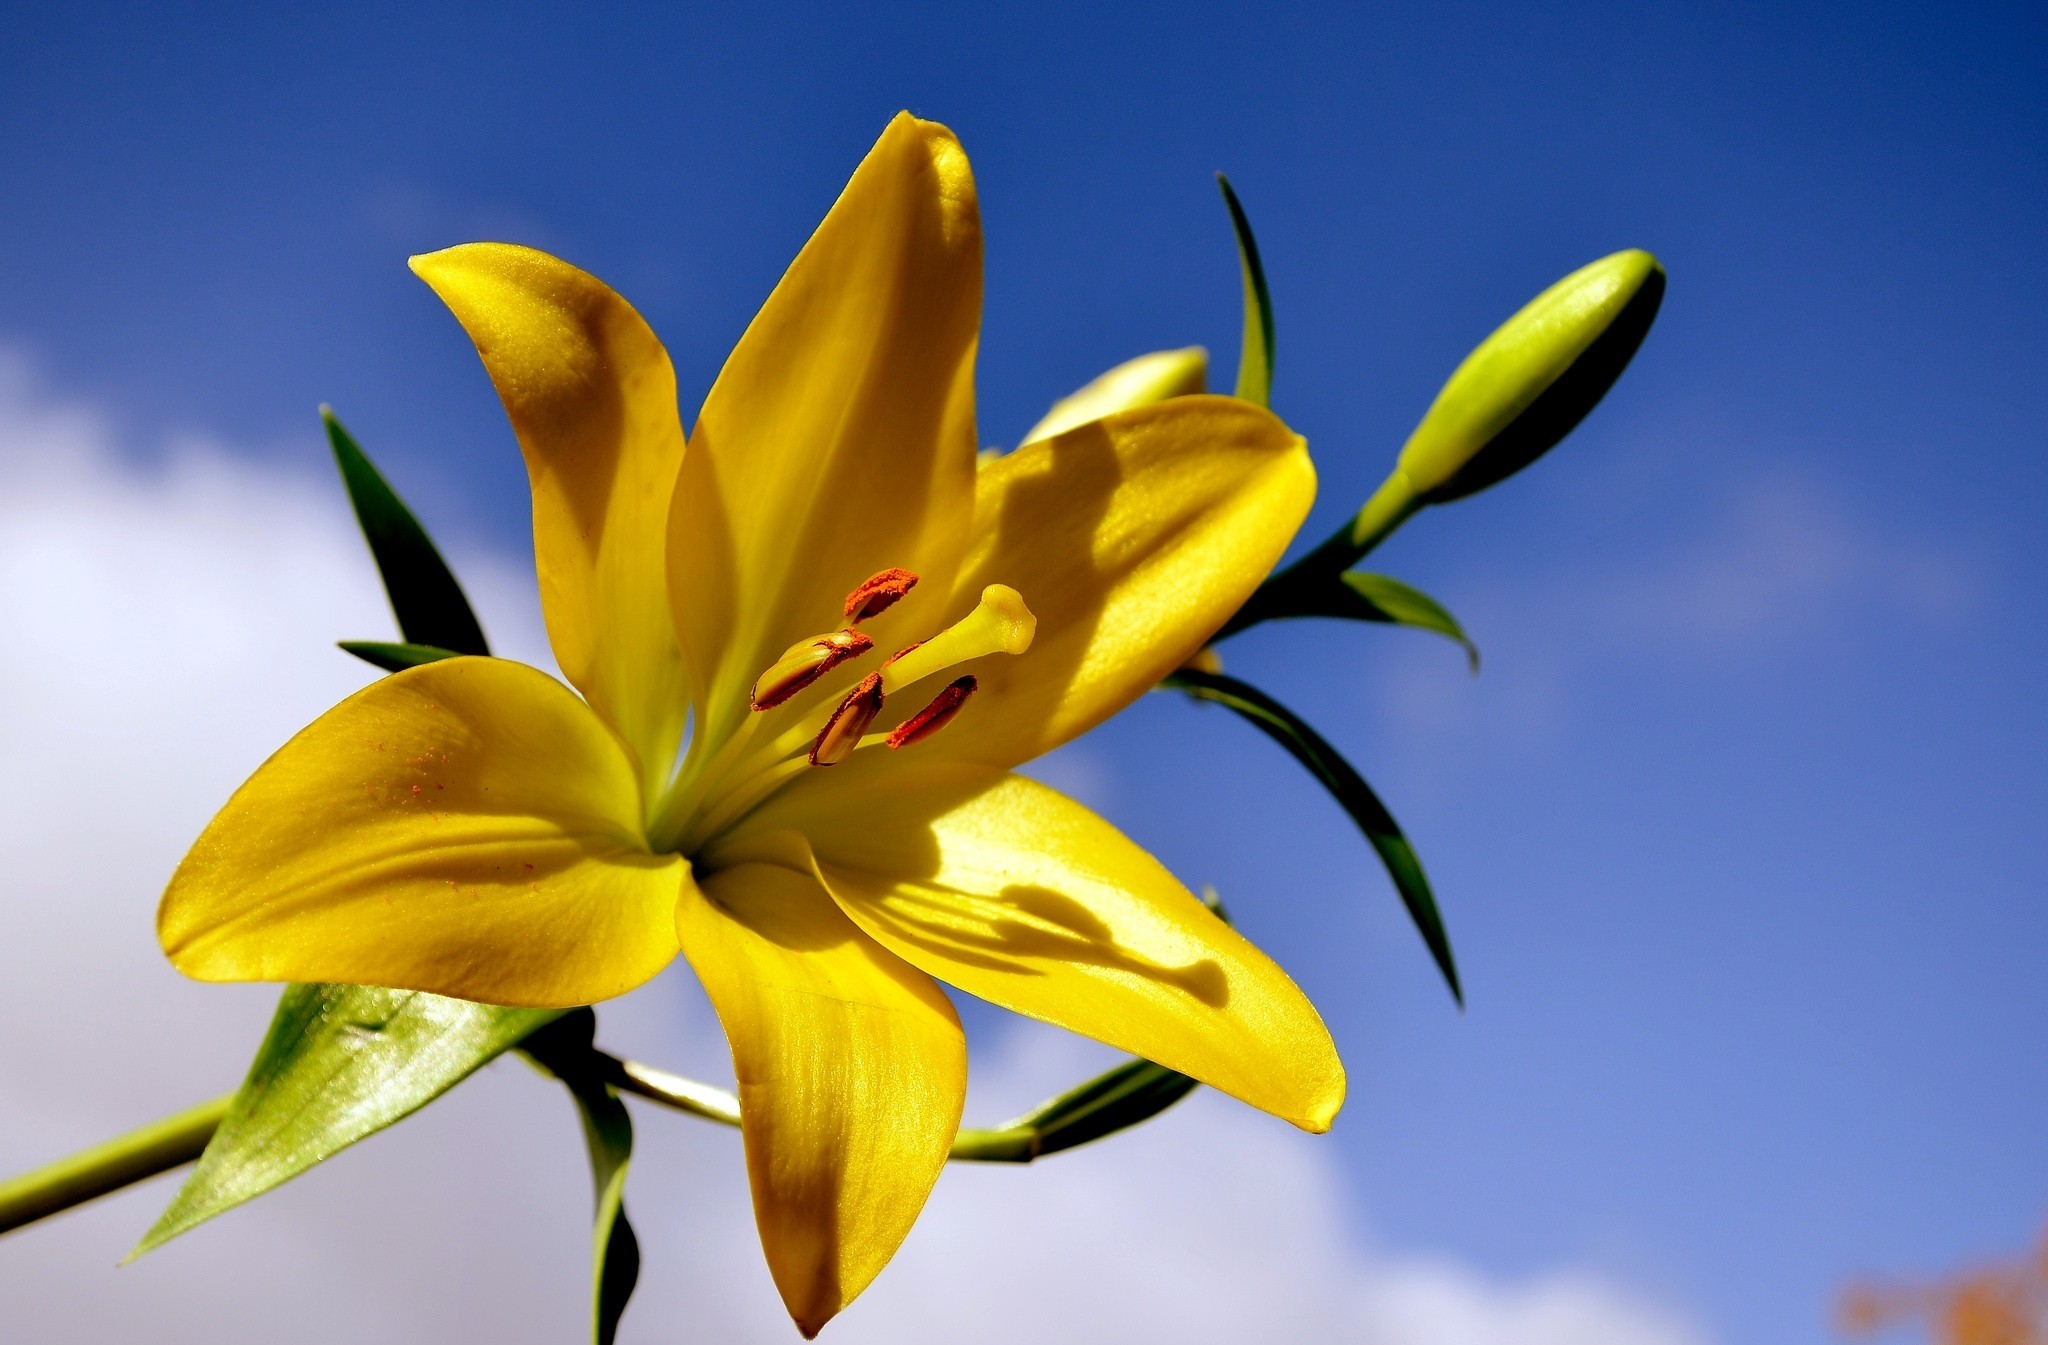 Lily: Hãy chiêm ngưỡng vẻ đẹp của những bông hoa Lily duyên dáng và tinh tế trong bộ sưu tập ảnh của chúng tôi! Từ màu trắng tinh khiết cho tới những màu sắc tươi tắn, những bông Lily này sẽ mang lại cảm giác thư giãn, yên bình cho màn hình của bạn.